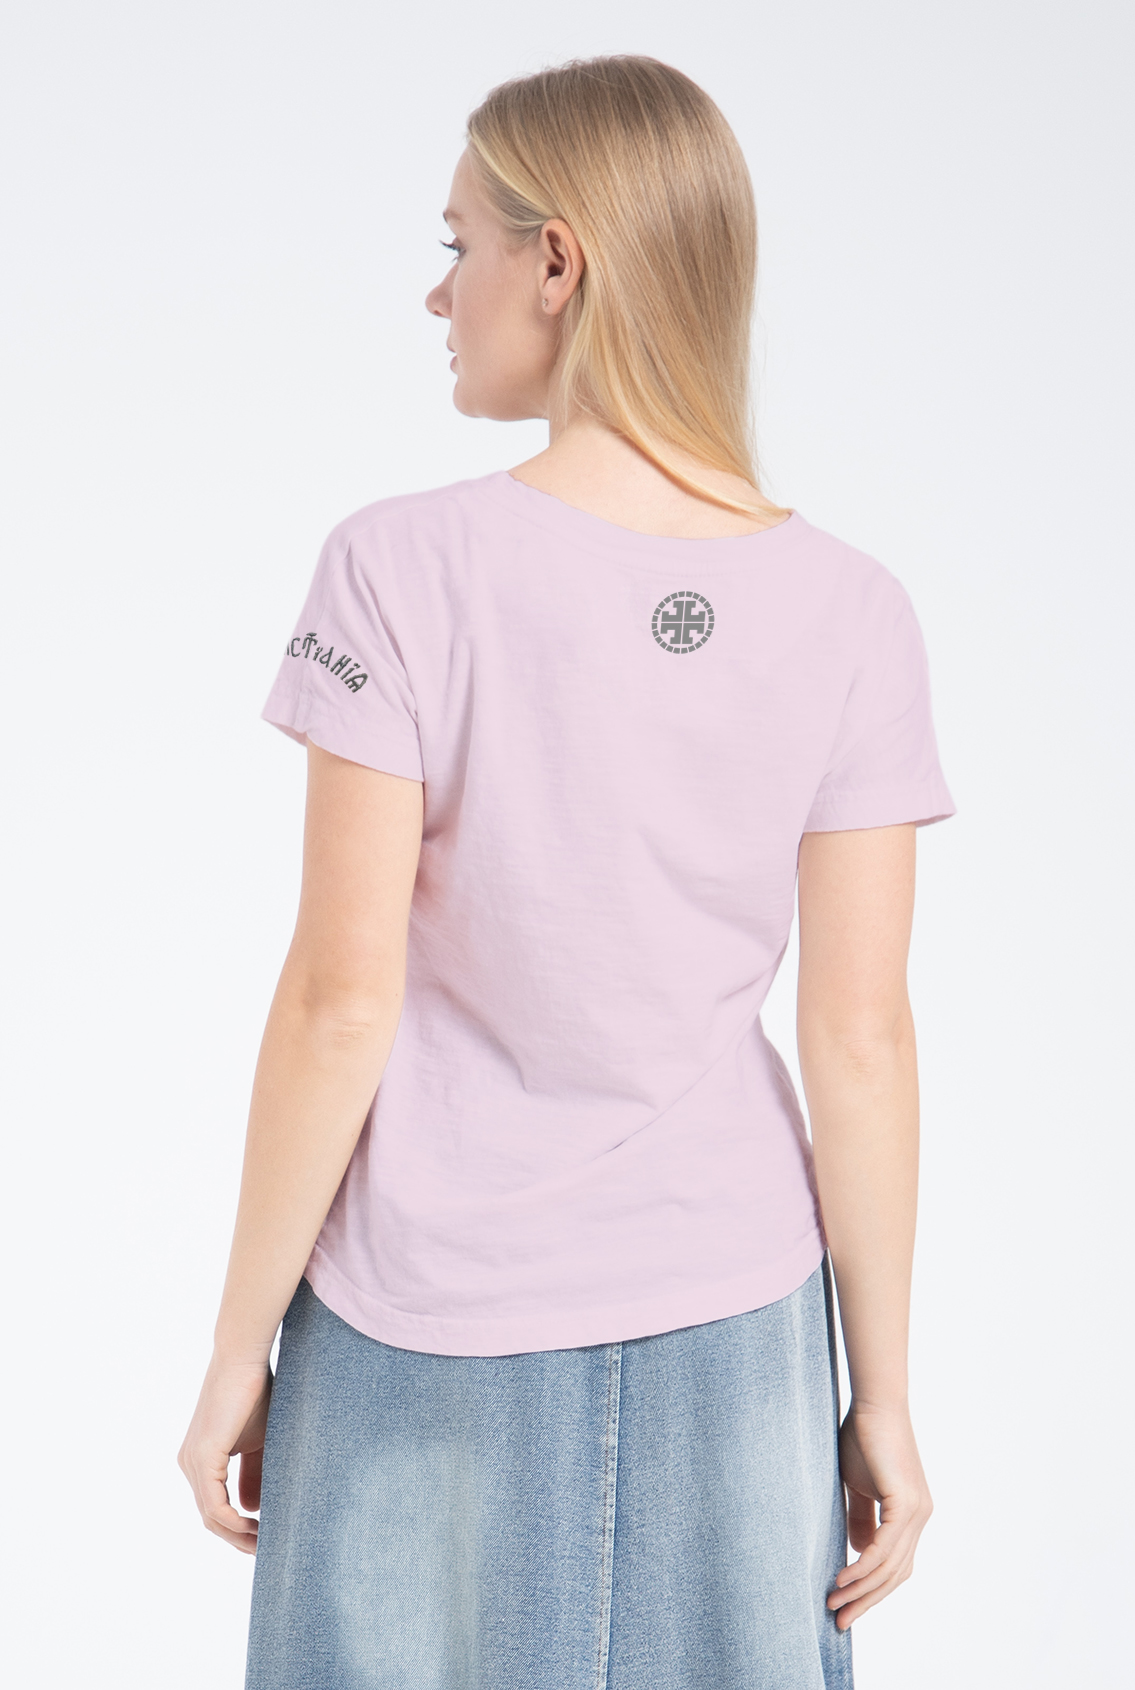 pink women's t-shirt